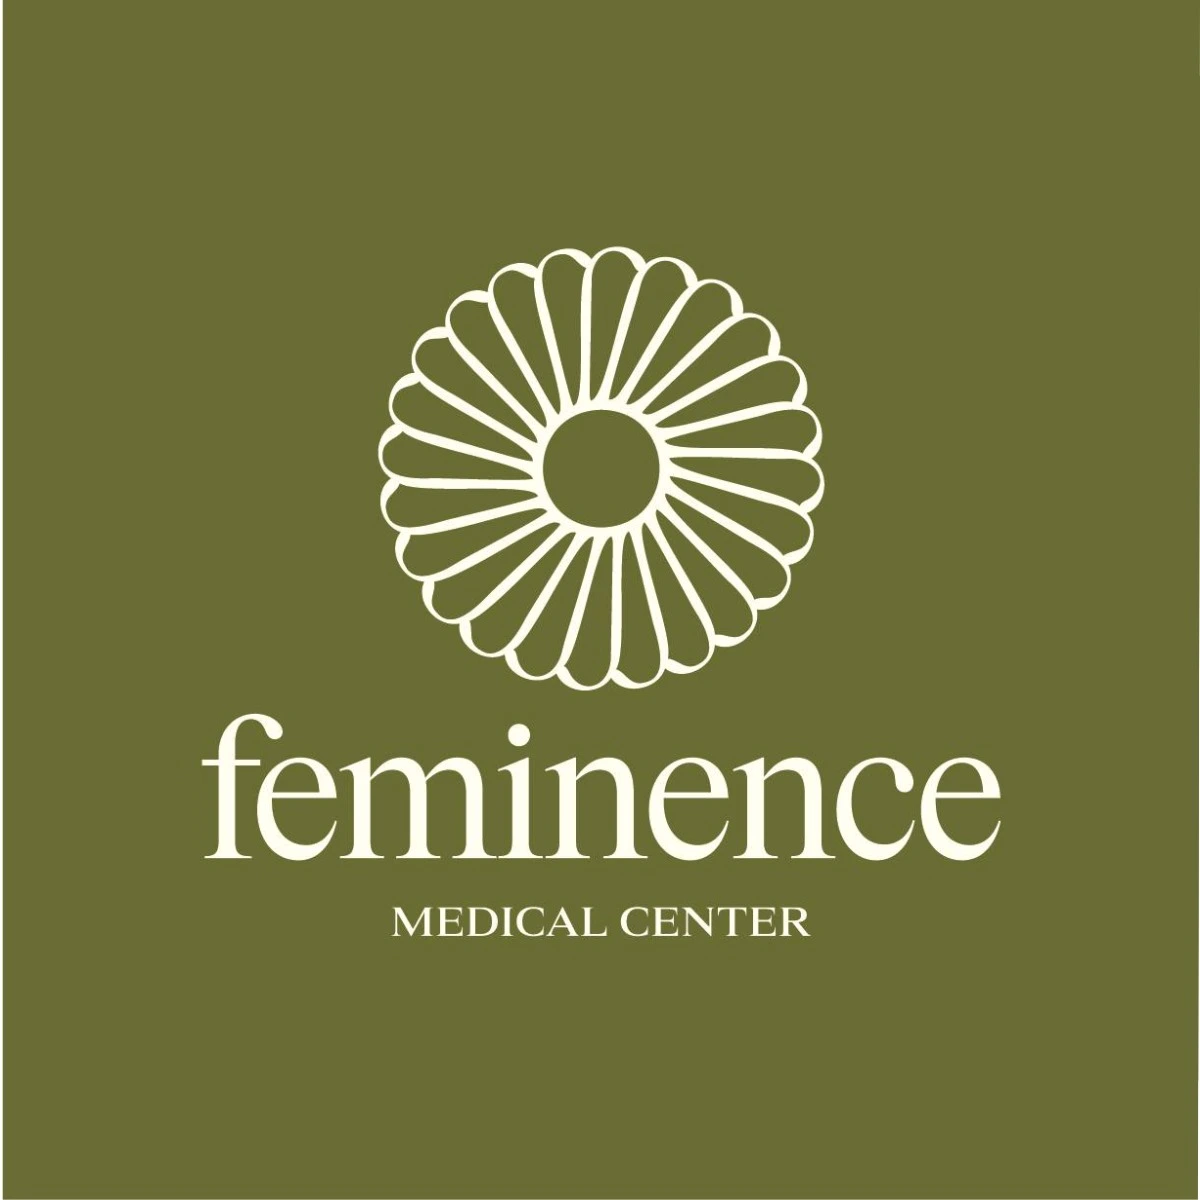 Feminence Medical Center